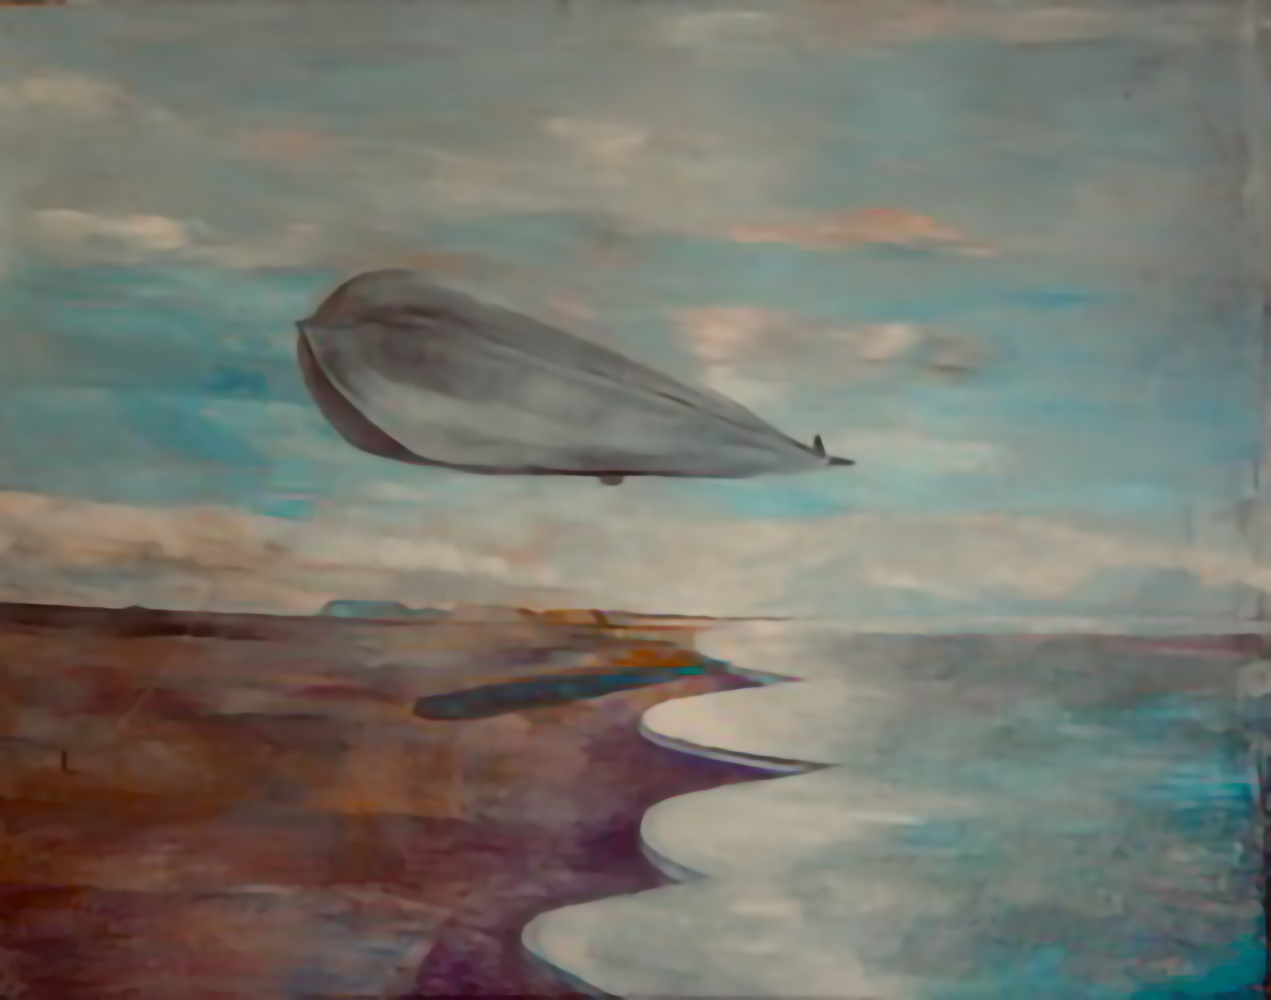 Paton Miller's art exhibited at the Hans Van de Bovenkamp studio